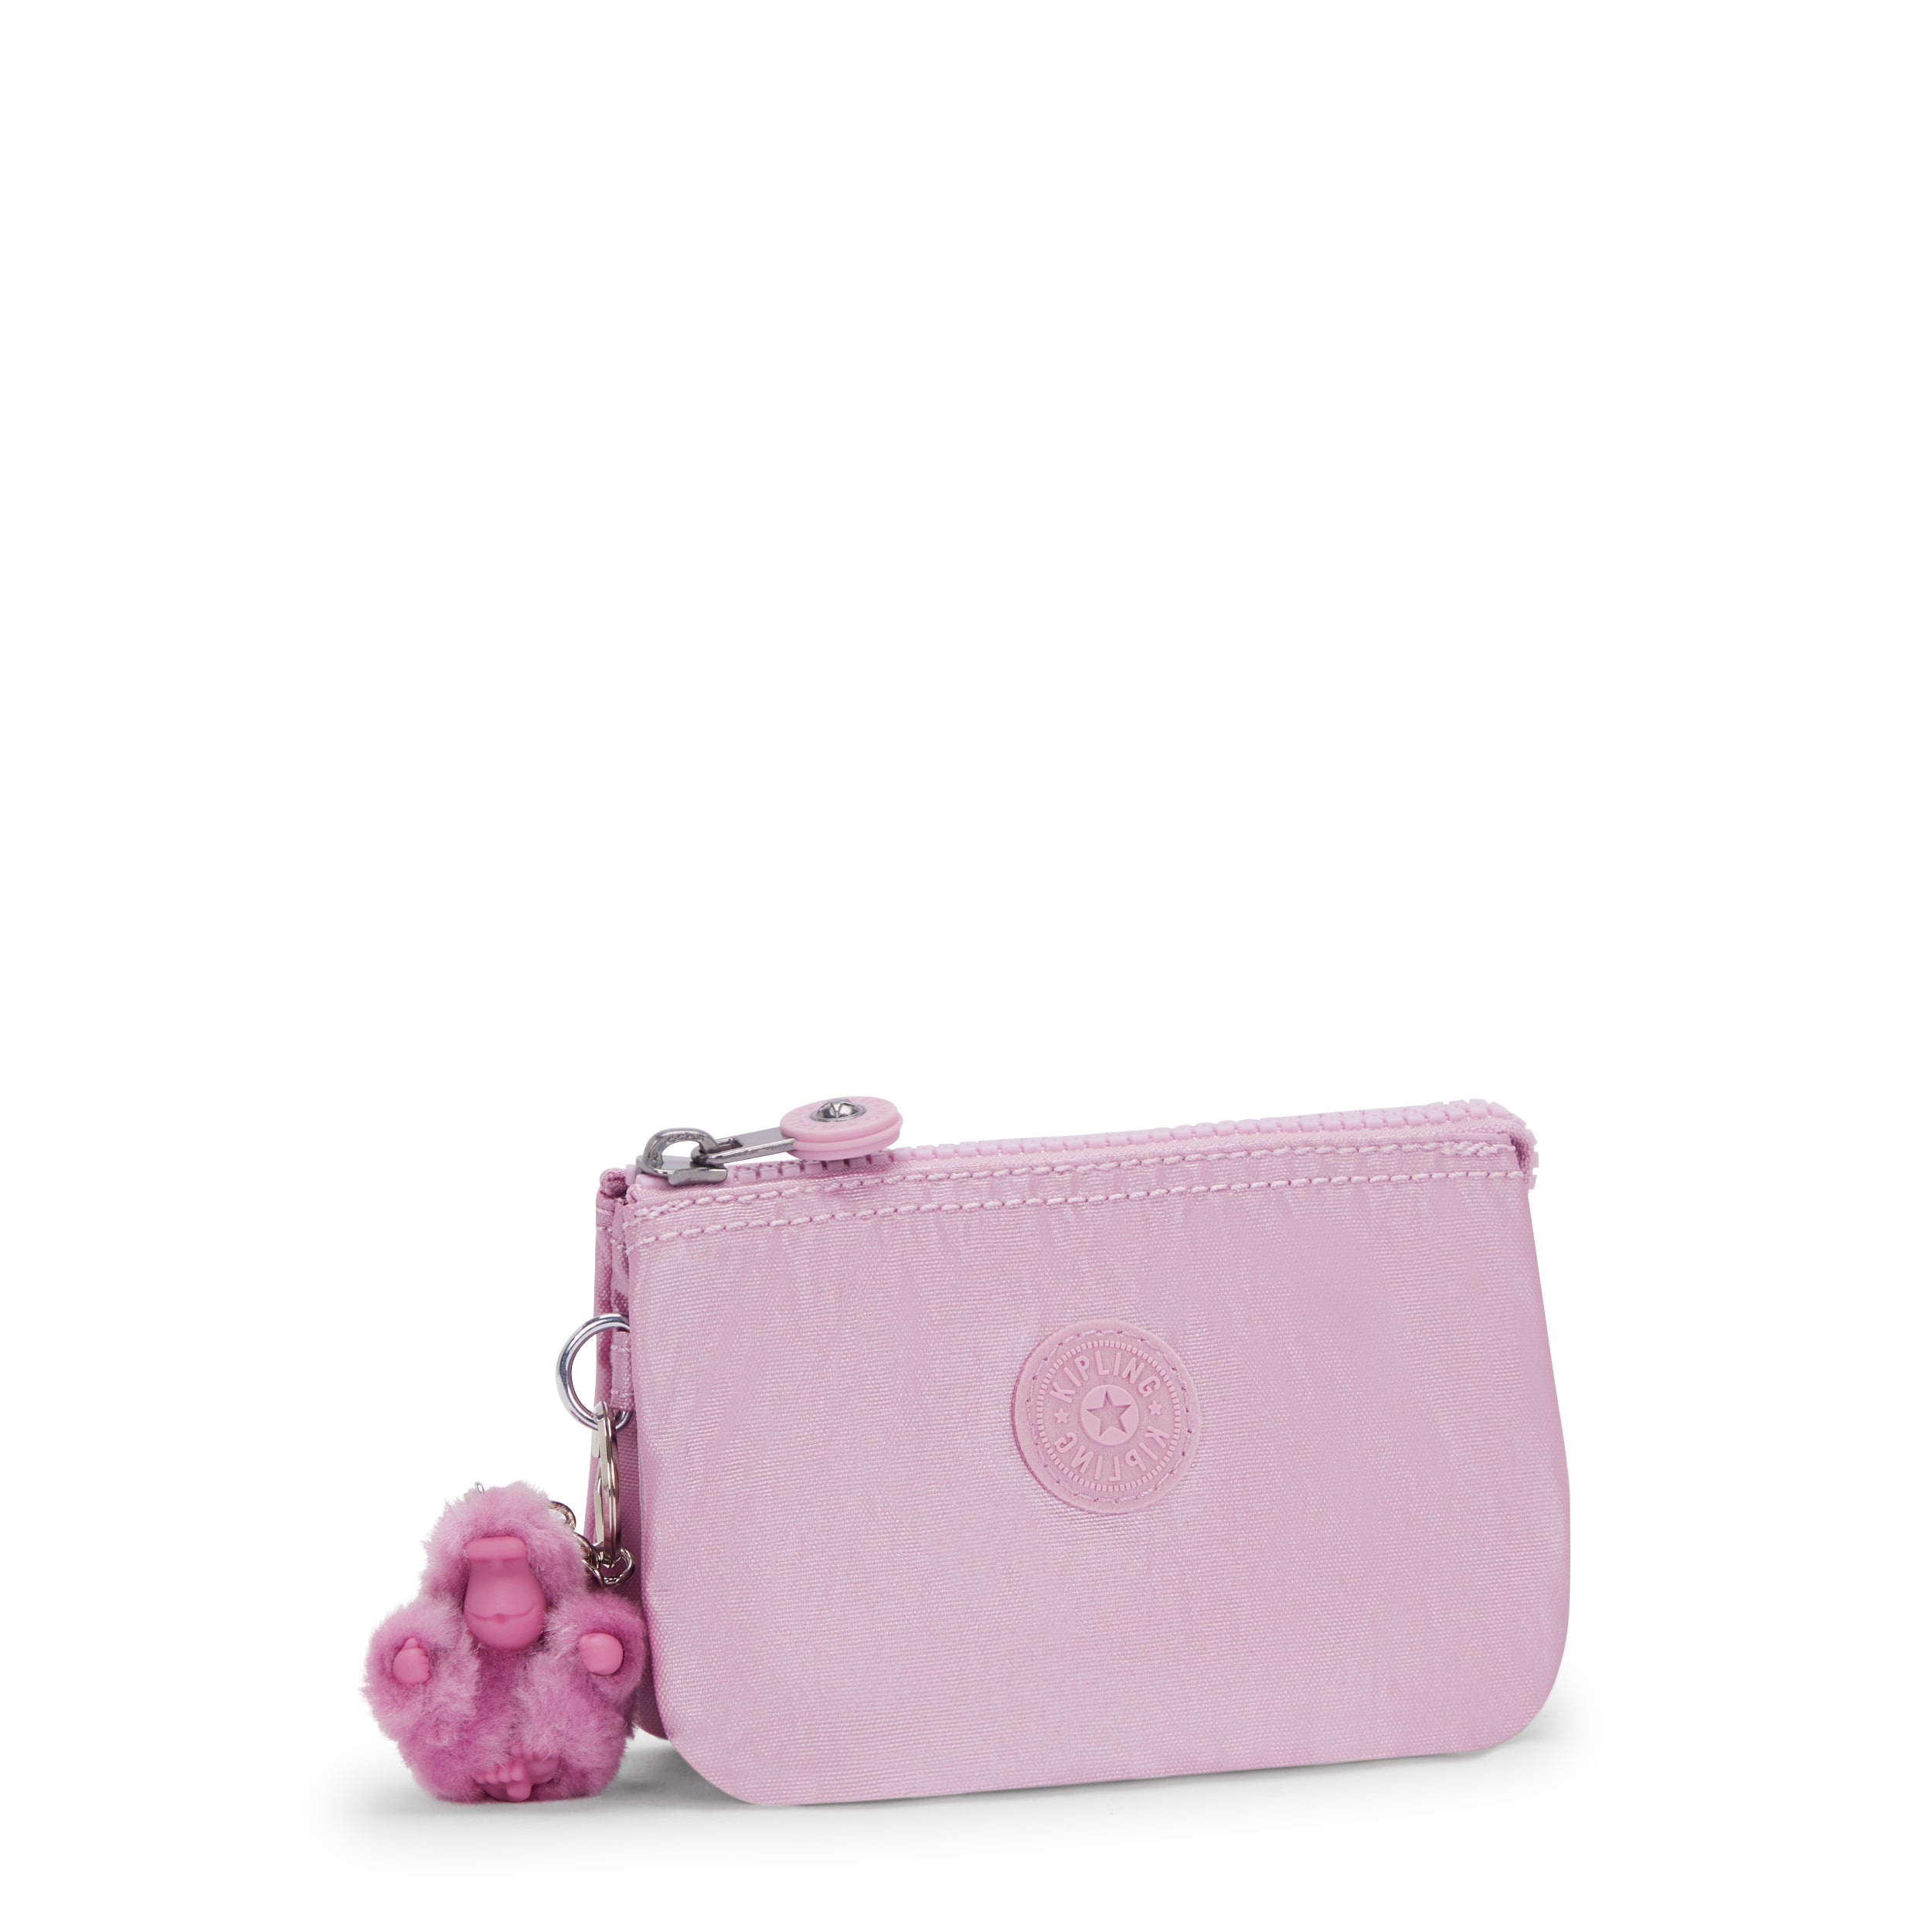 KIPLING-Creativity S-Small purse-Metallic Lilac-15205-F4D